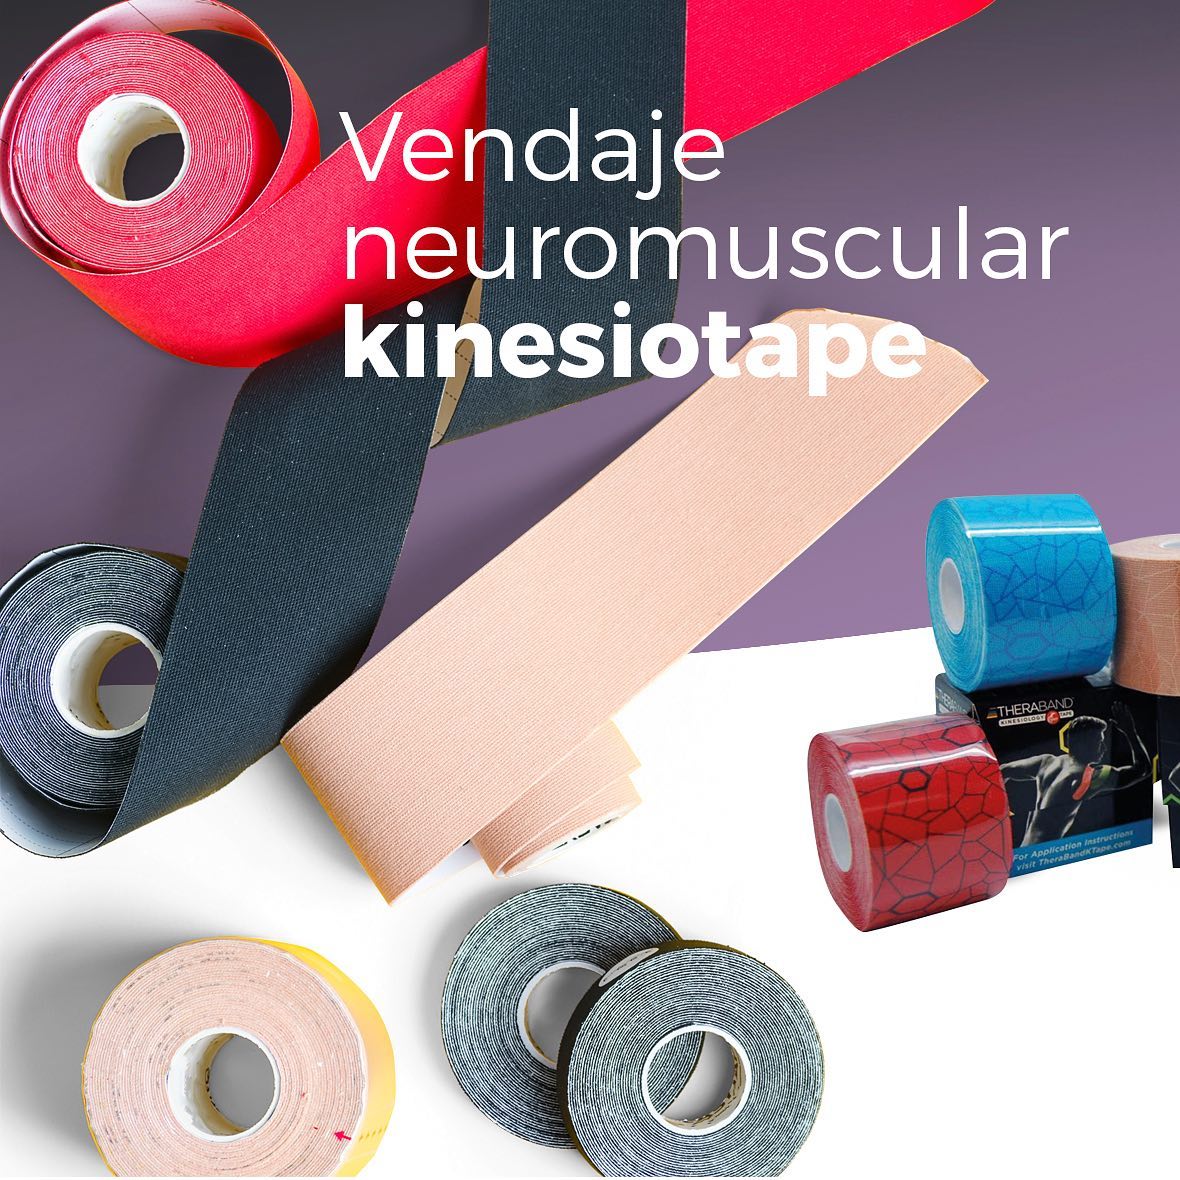 El vendaje neuromuscular tambien conocido como Kinesiotaape es una herramienta esencial para cualquier fisioterapeuta. Compra tu camilla plegable, hidraulica o electrica junto con tu kit de vendajes para fisioterapia.